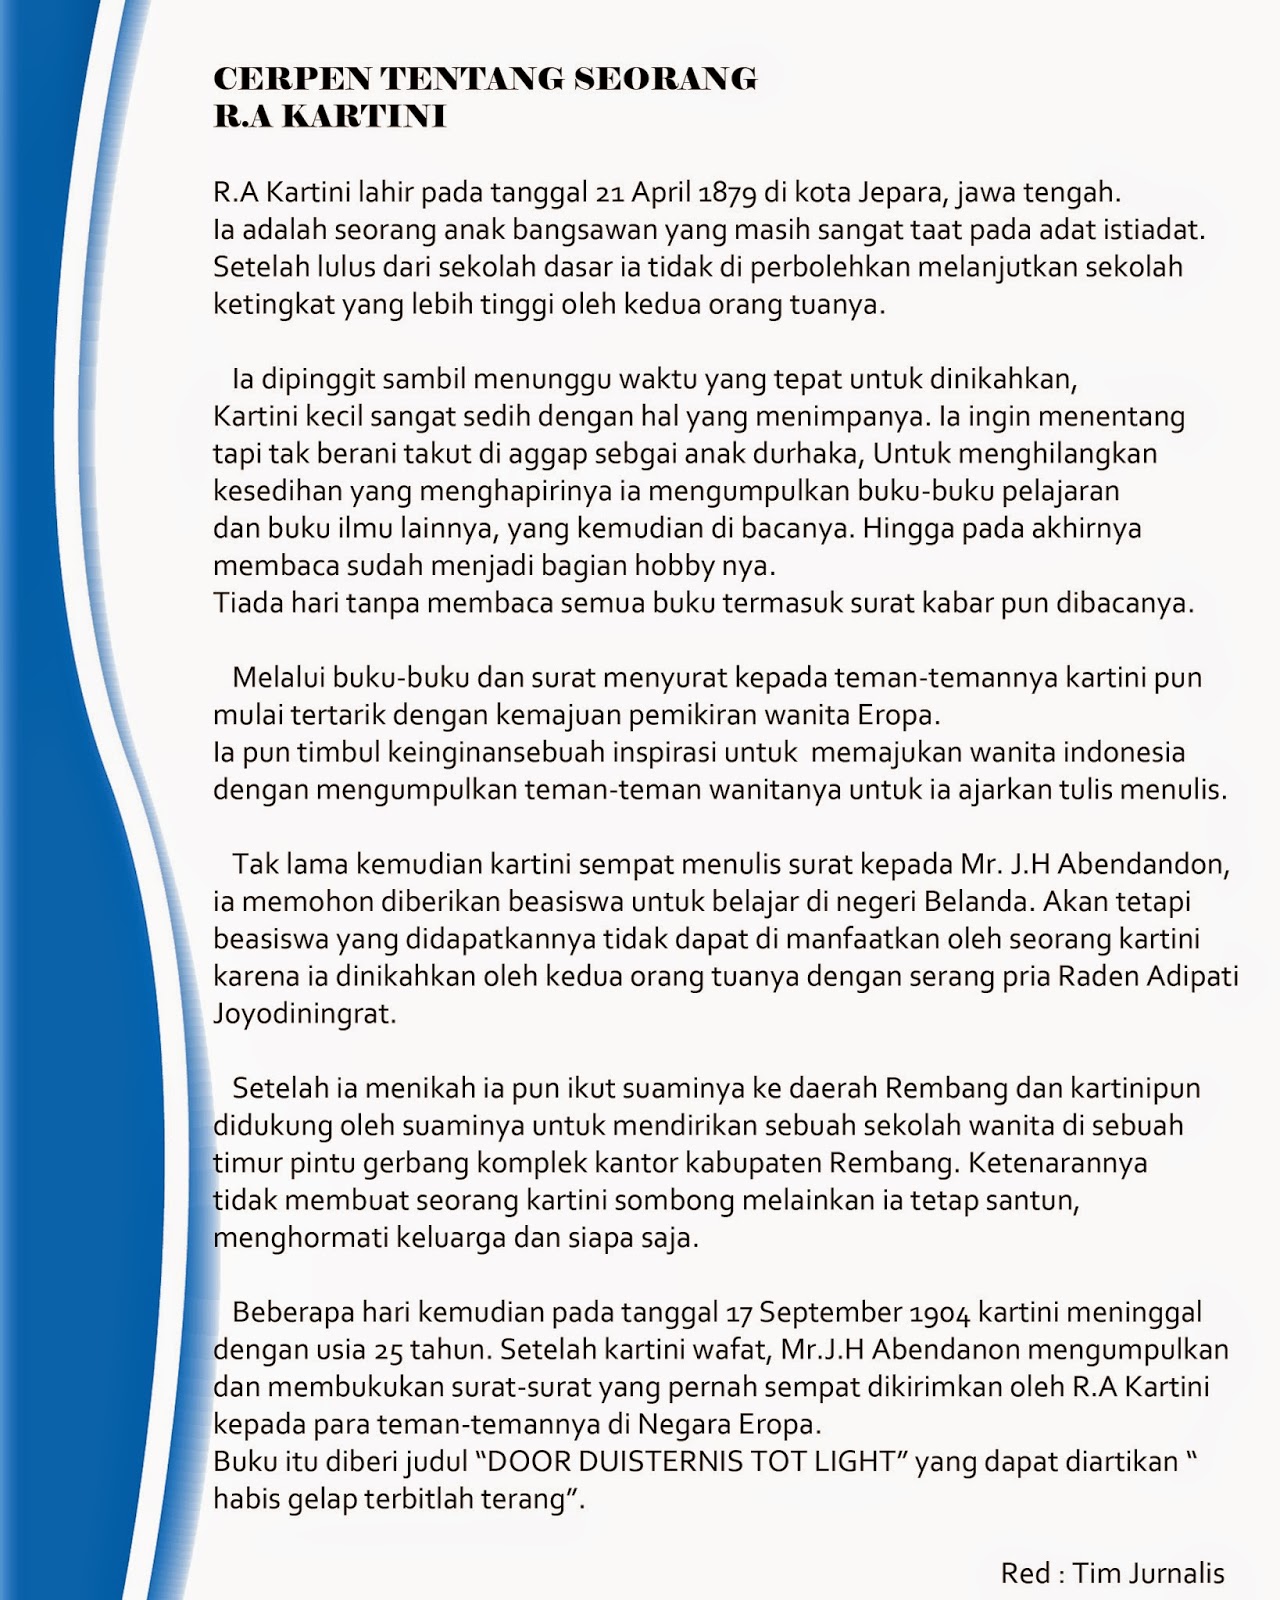 mading edisi Kartini day 2014